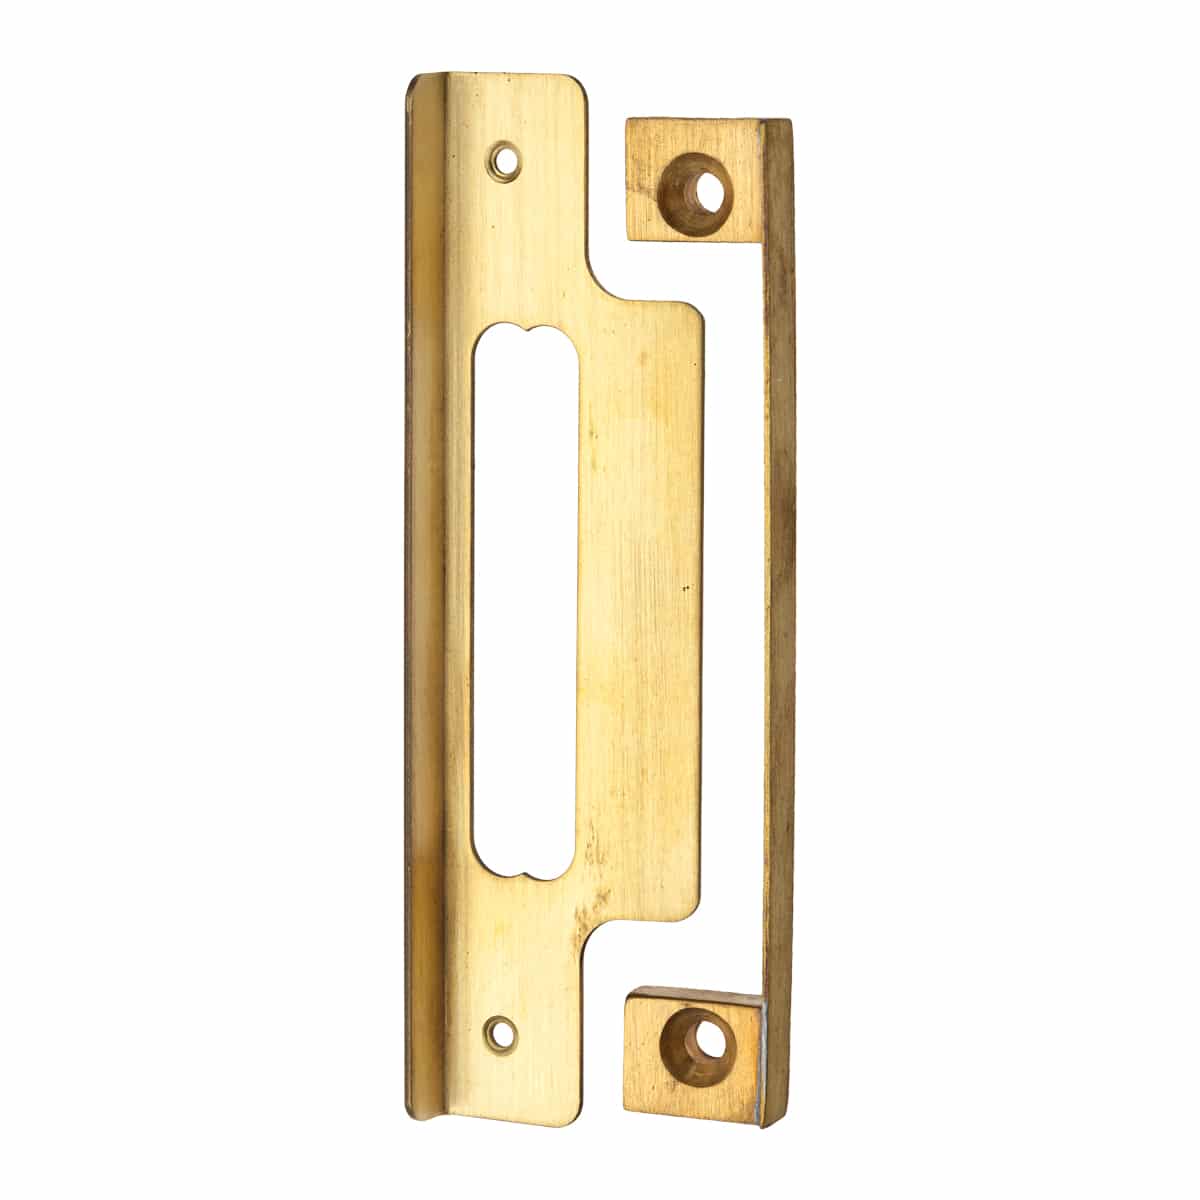 Rebate Kit For Sash Lock Brass